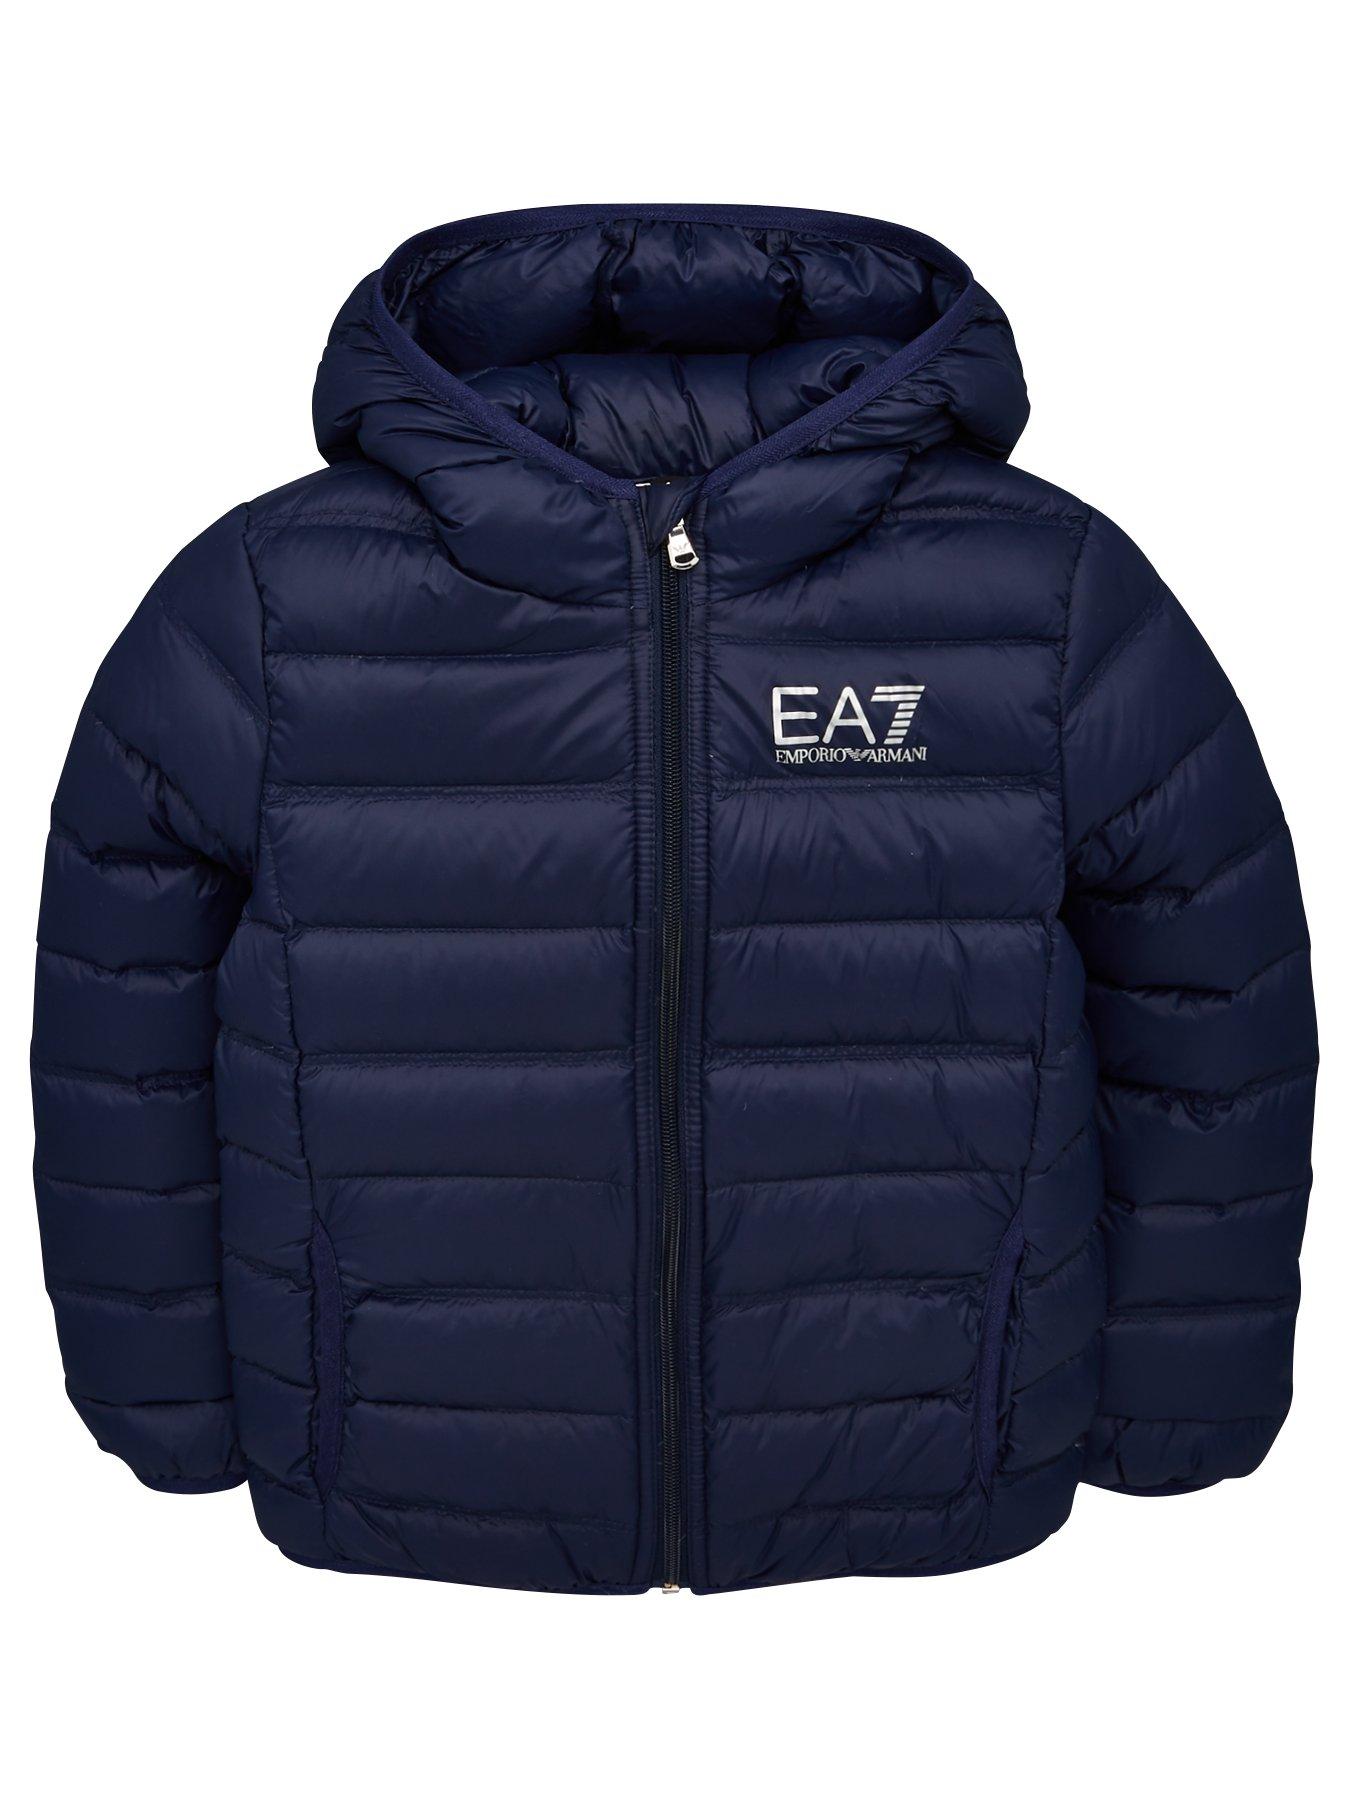 reebok ea7 jacket